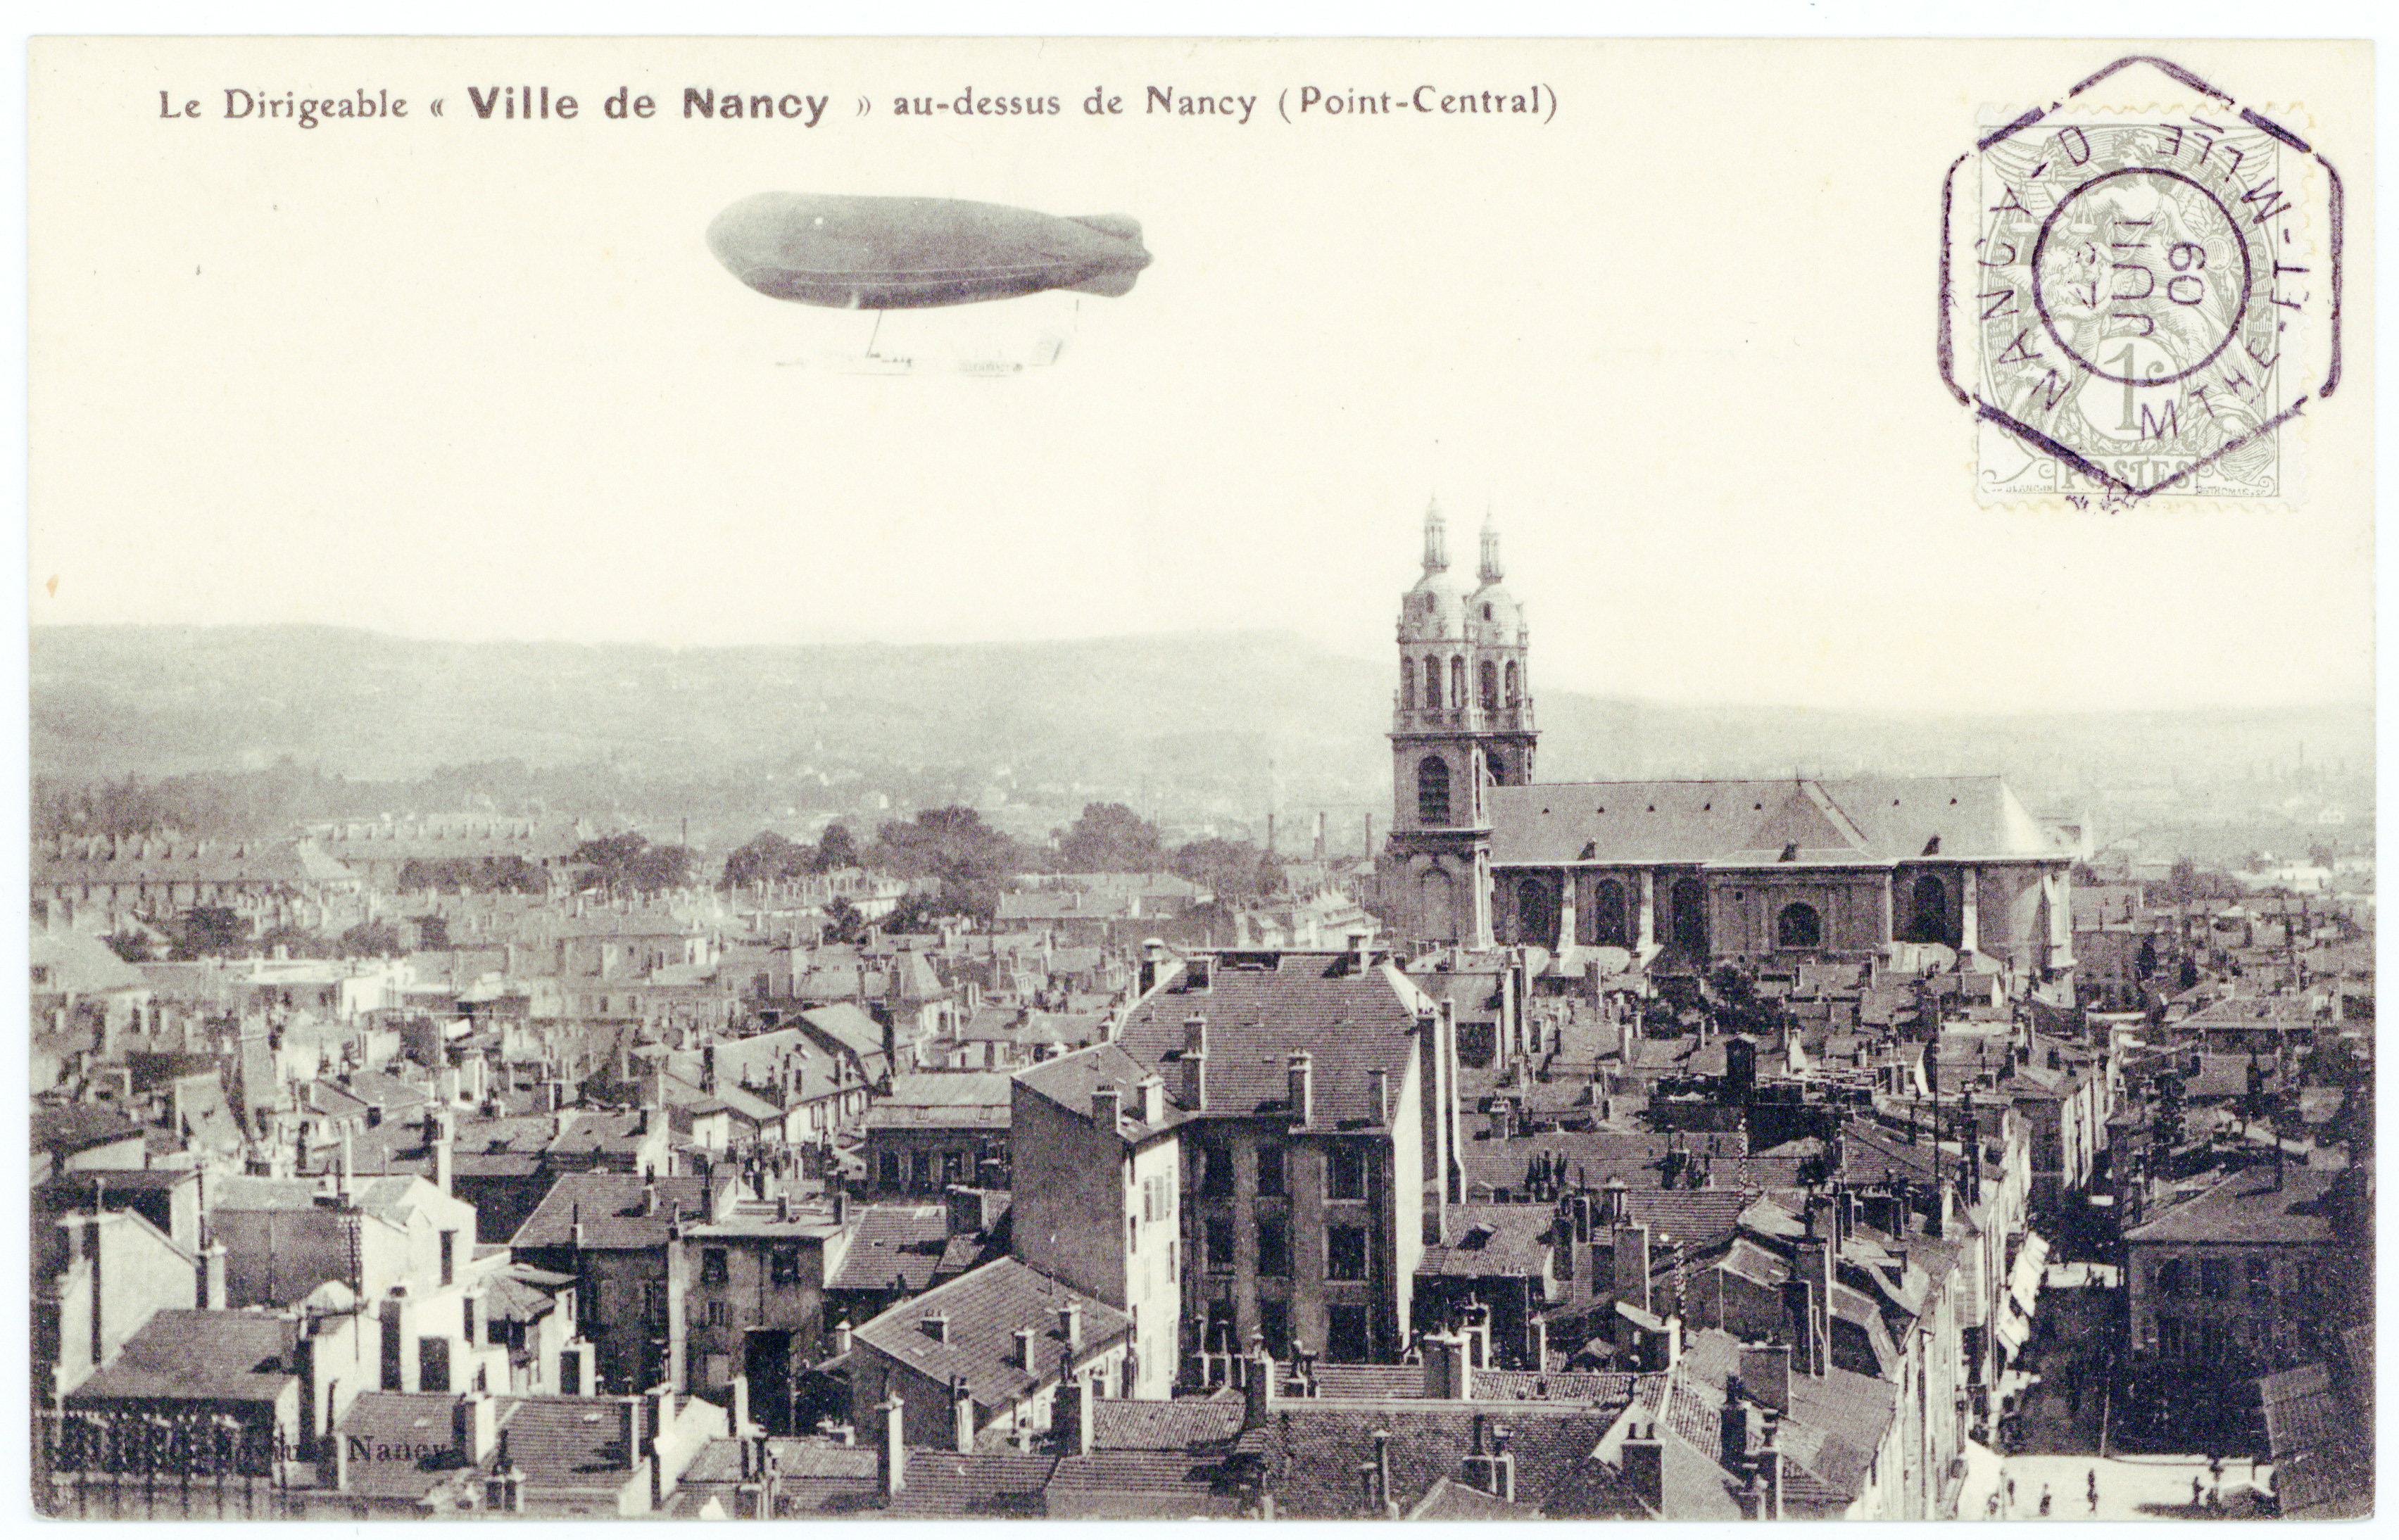 Contenu du Le dirigeable "Ville de Nancy" au-dessus de Nancy (Point-Central)